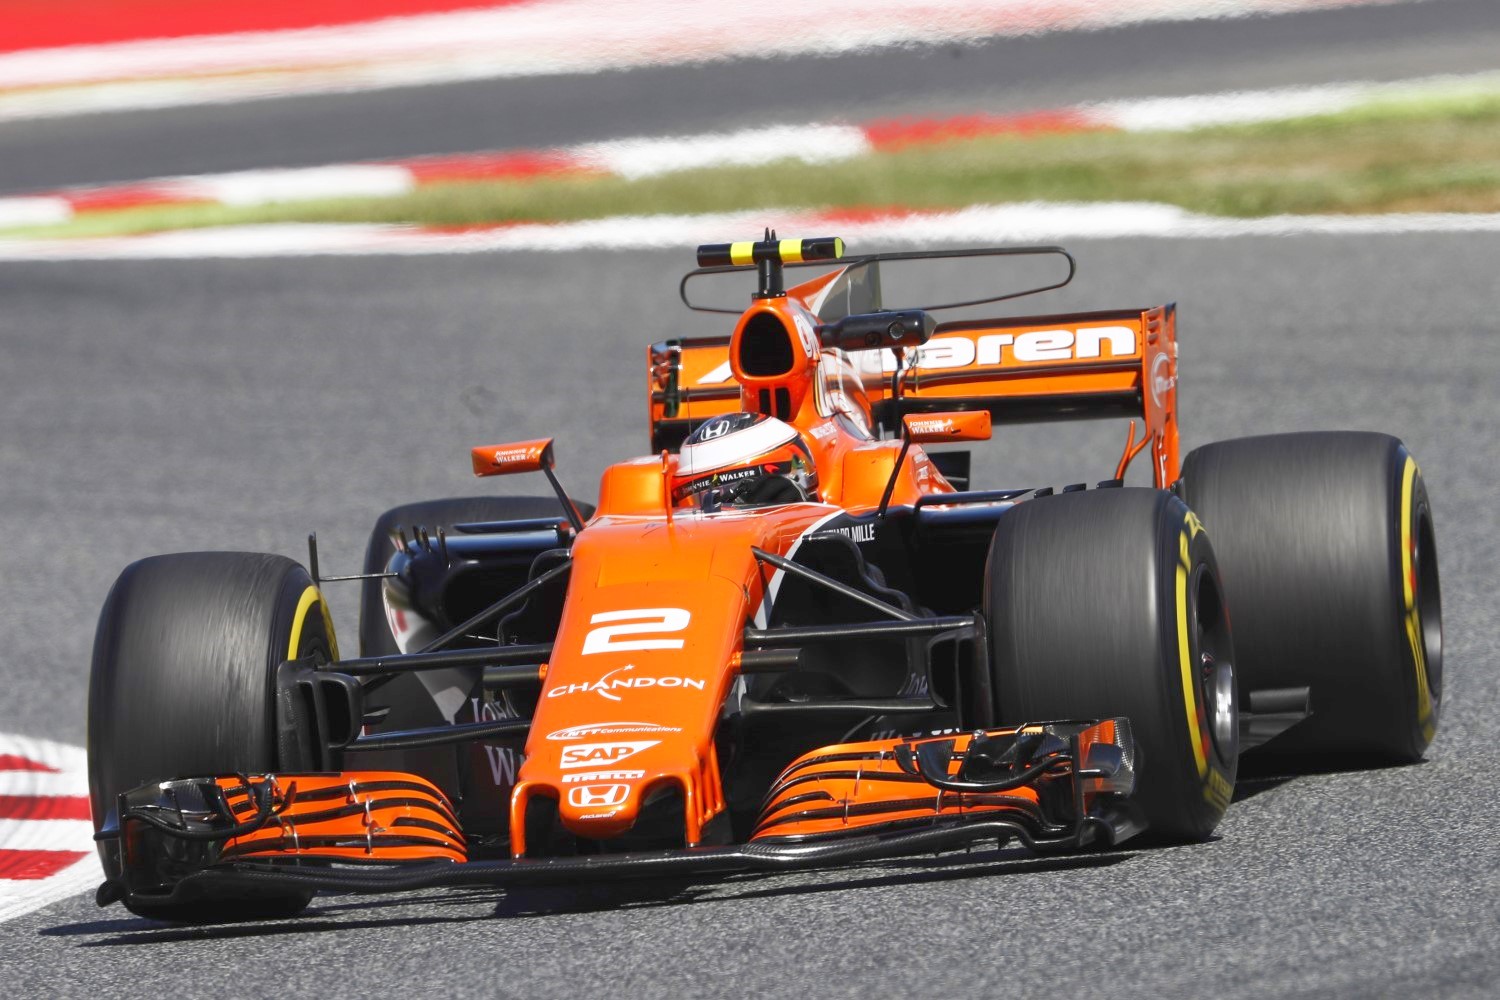 Vandoorne in the McLaren Honda Friday in Spain